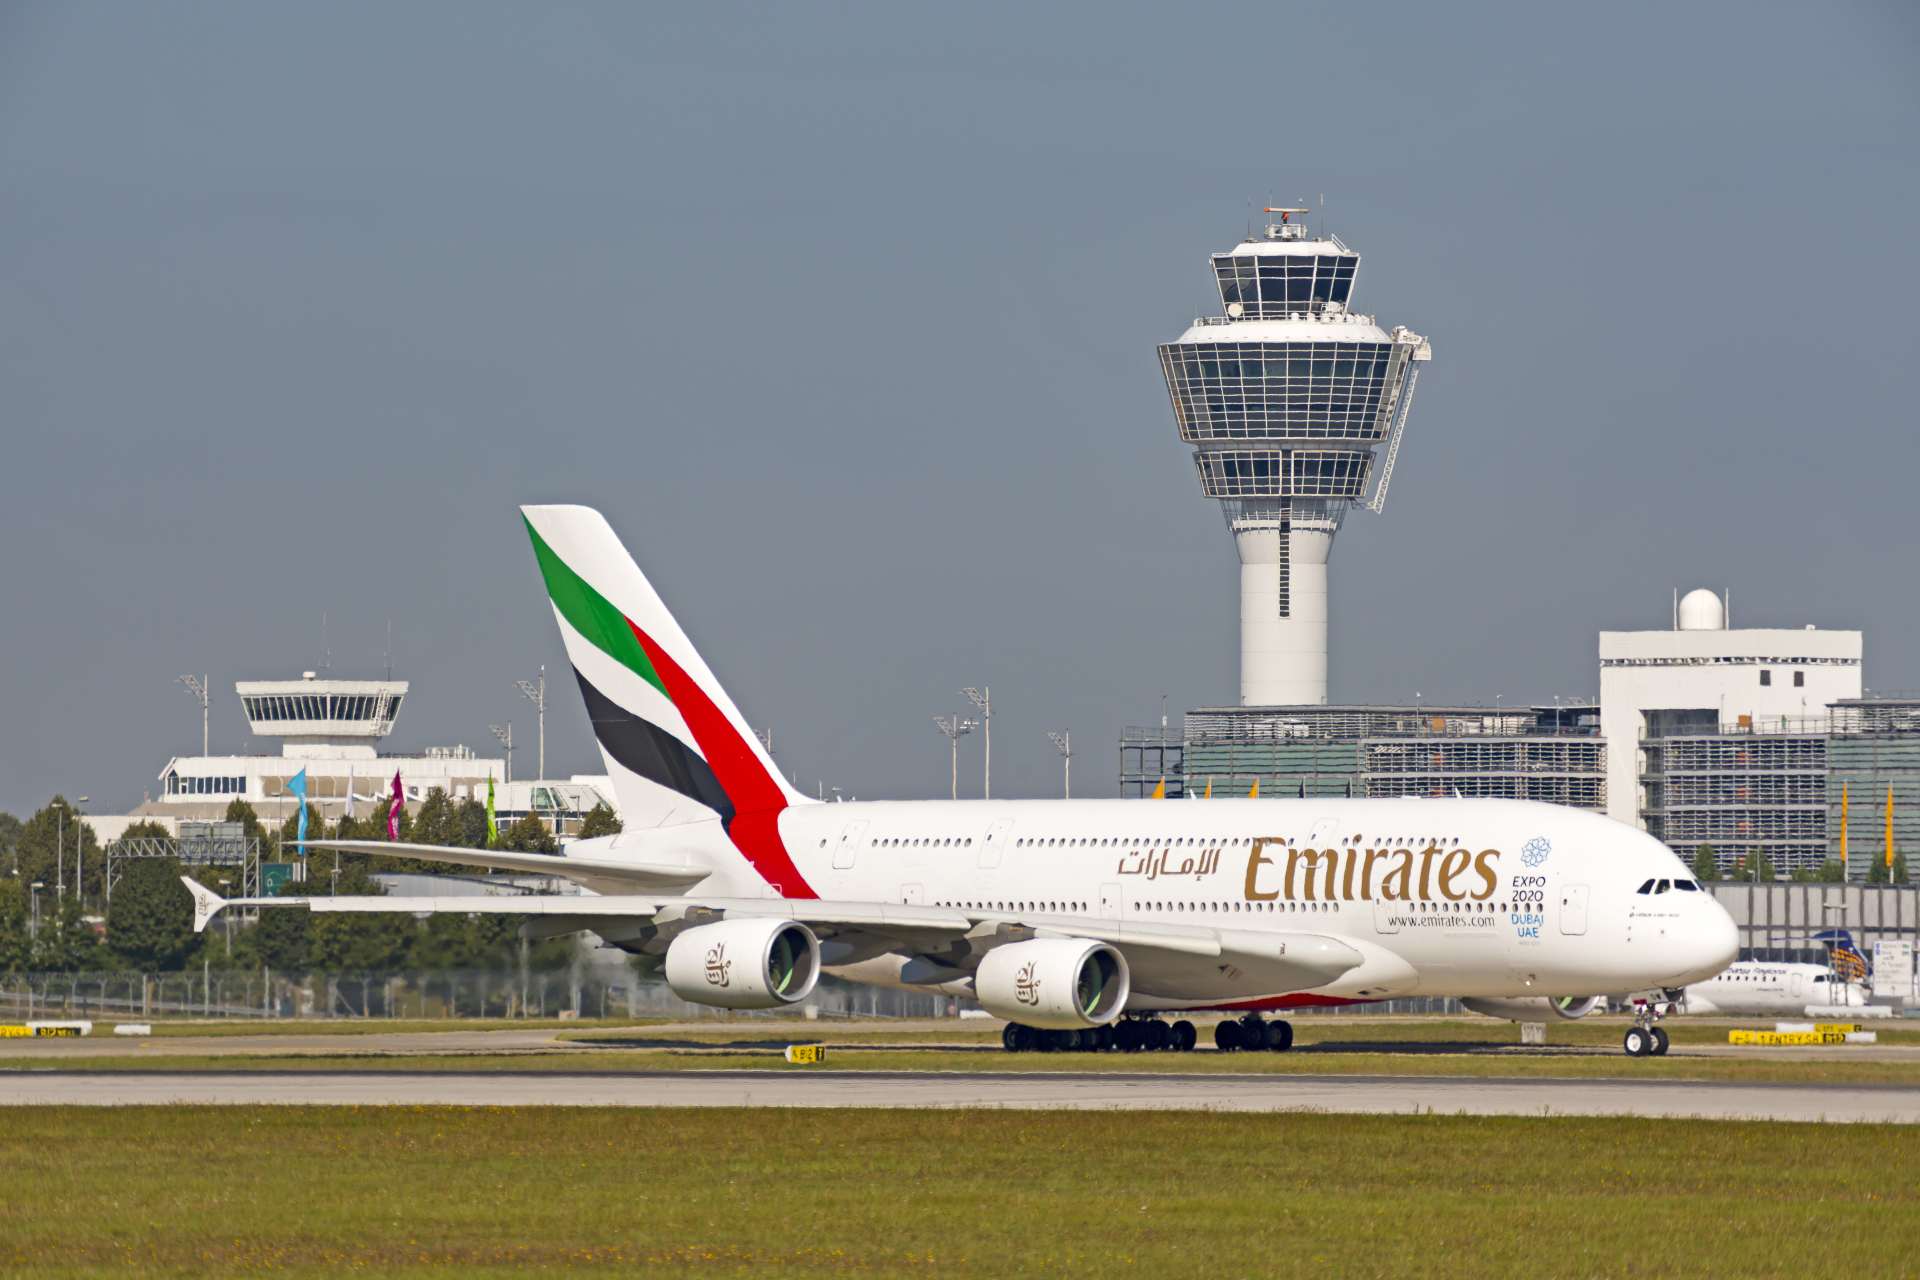 Flughafen München Emirates Airbus A380 auf dem Rollfeld